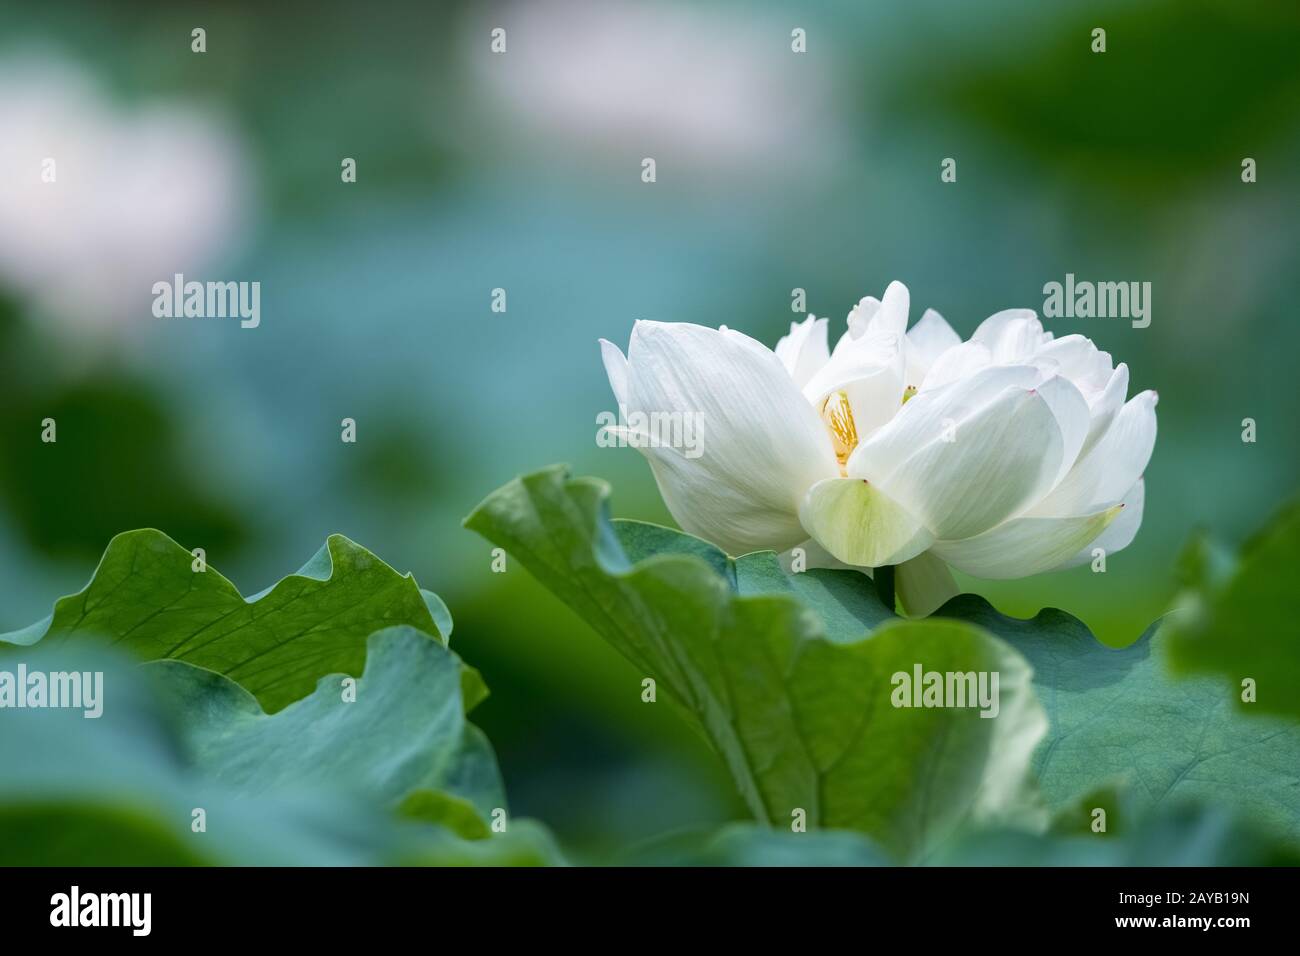 fermeture de fleurs de lotus blanches fleuries Banque D'Images